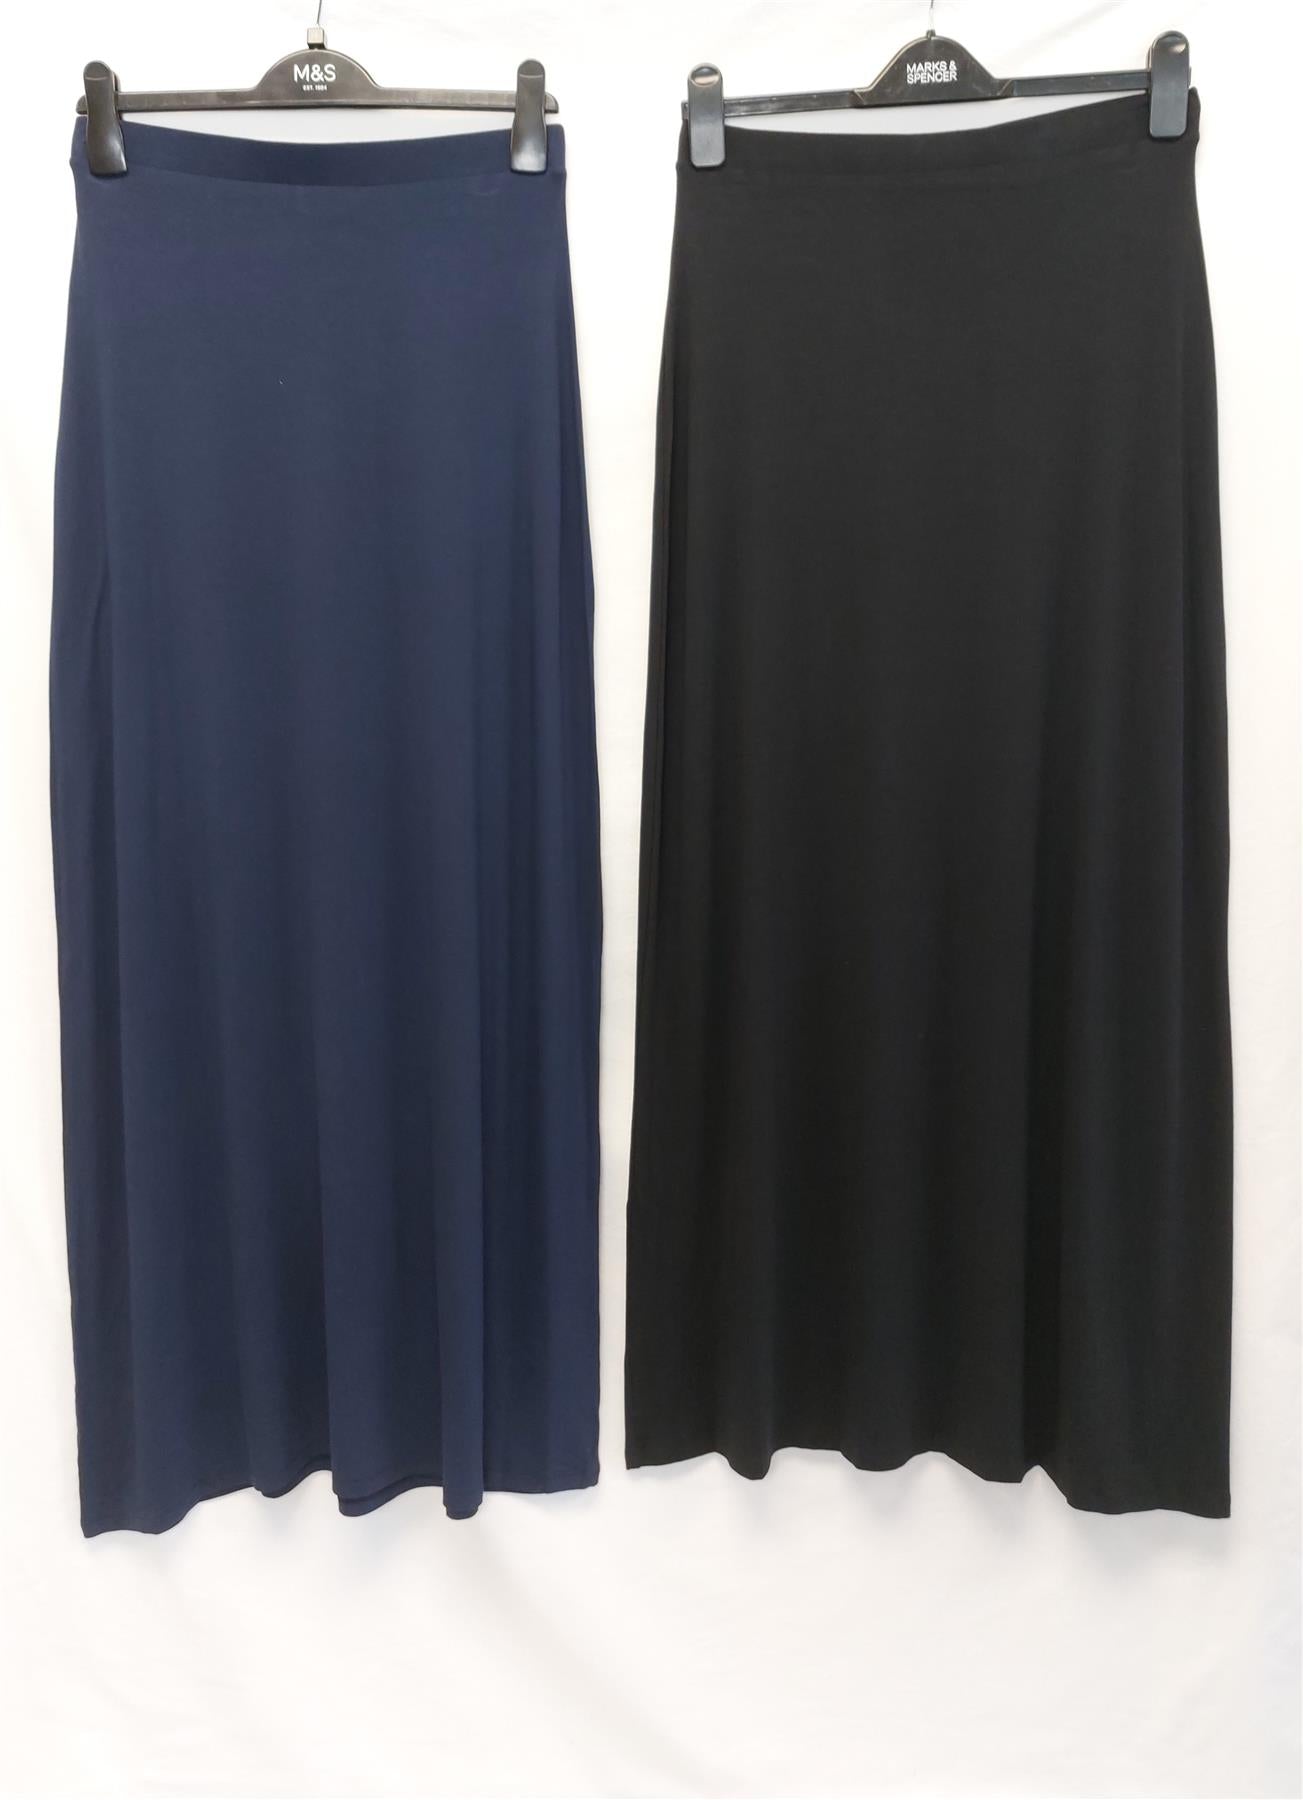 Long Maxi Summer Skirt RRP £19.50